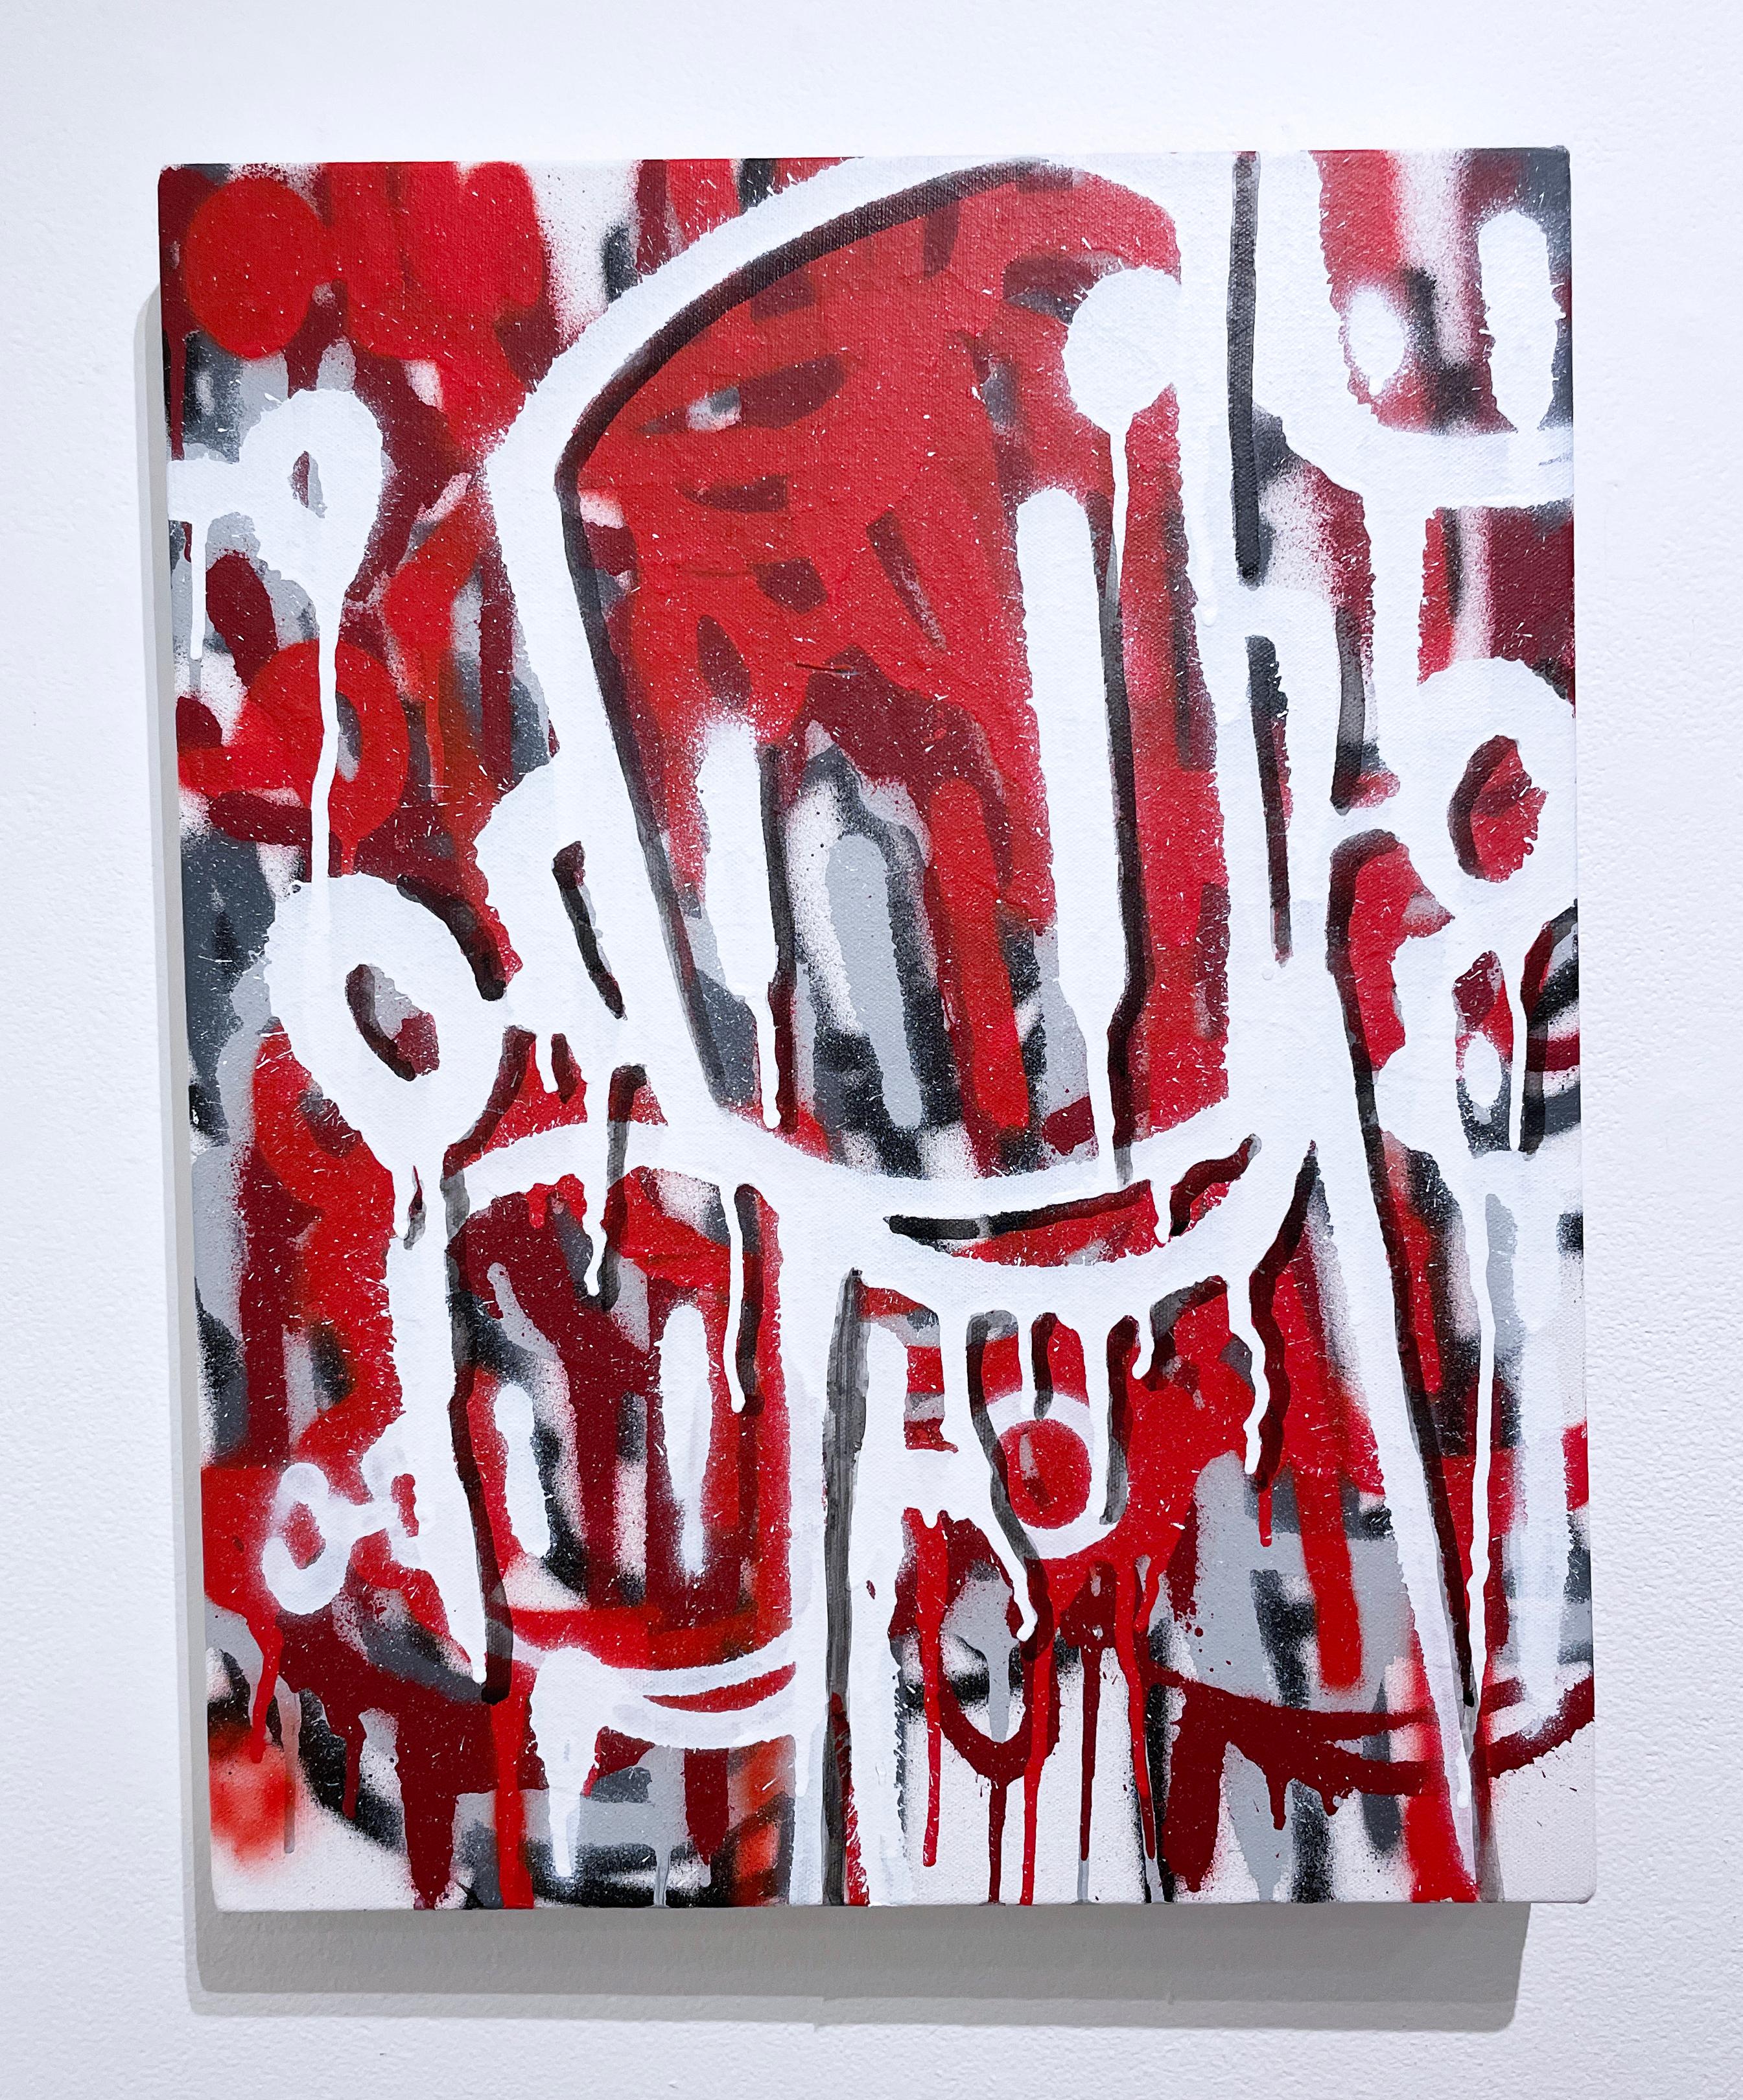 Mémoires ou fantômes de Chris RWK, art de la rue, graffiti, peinture à la bombe, rouge et blanc